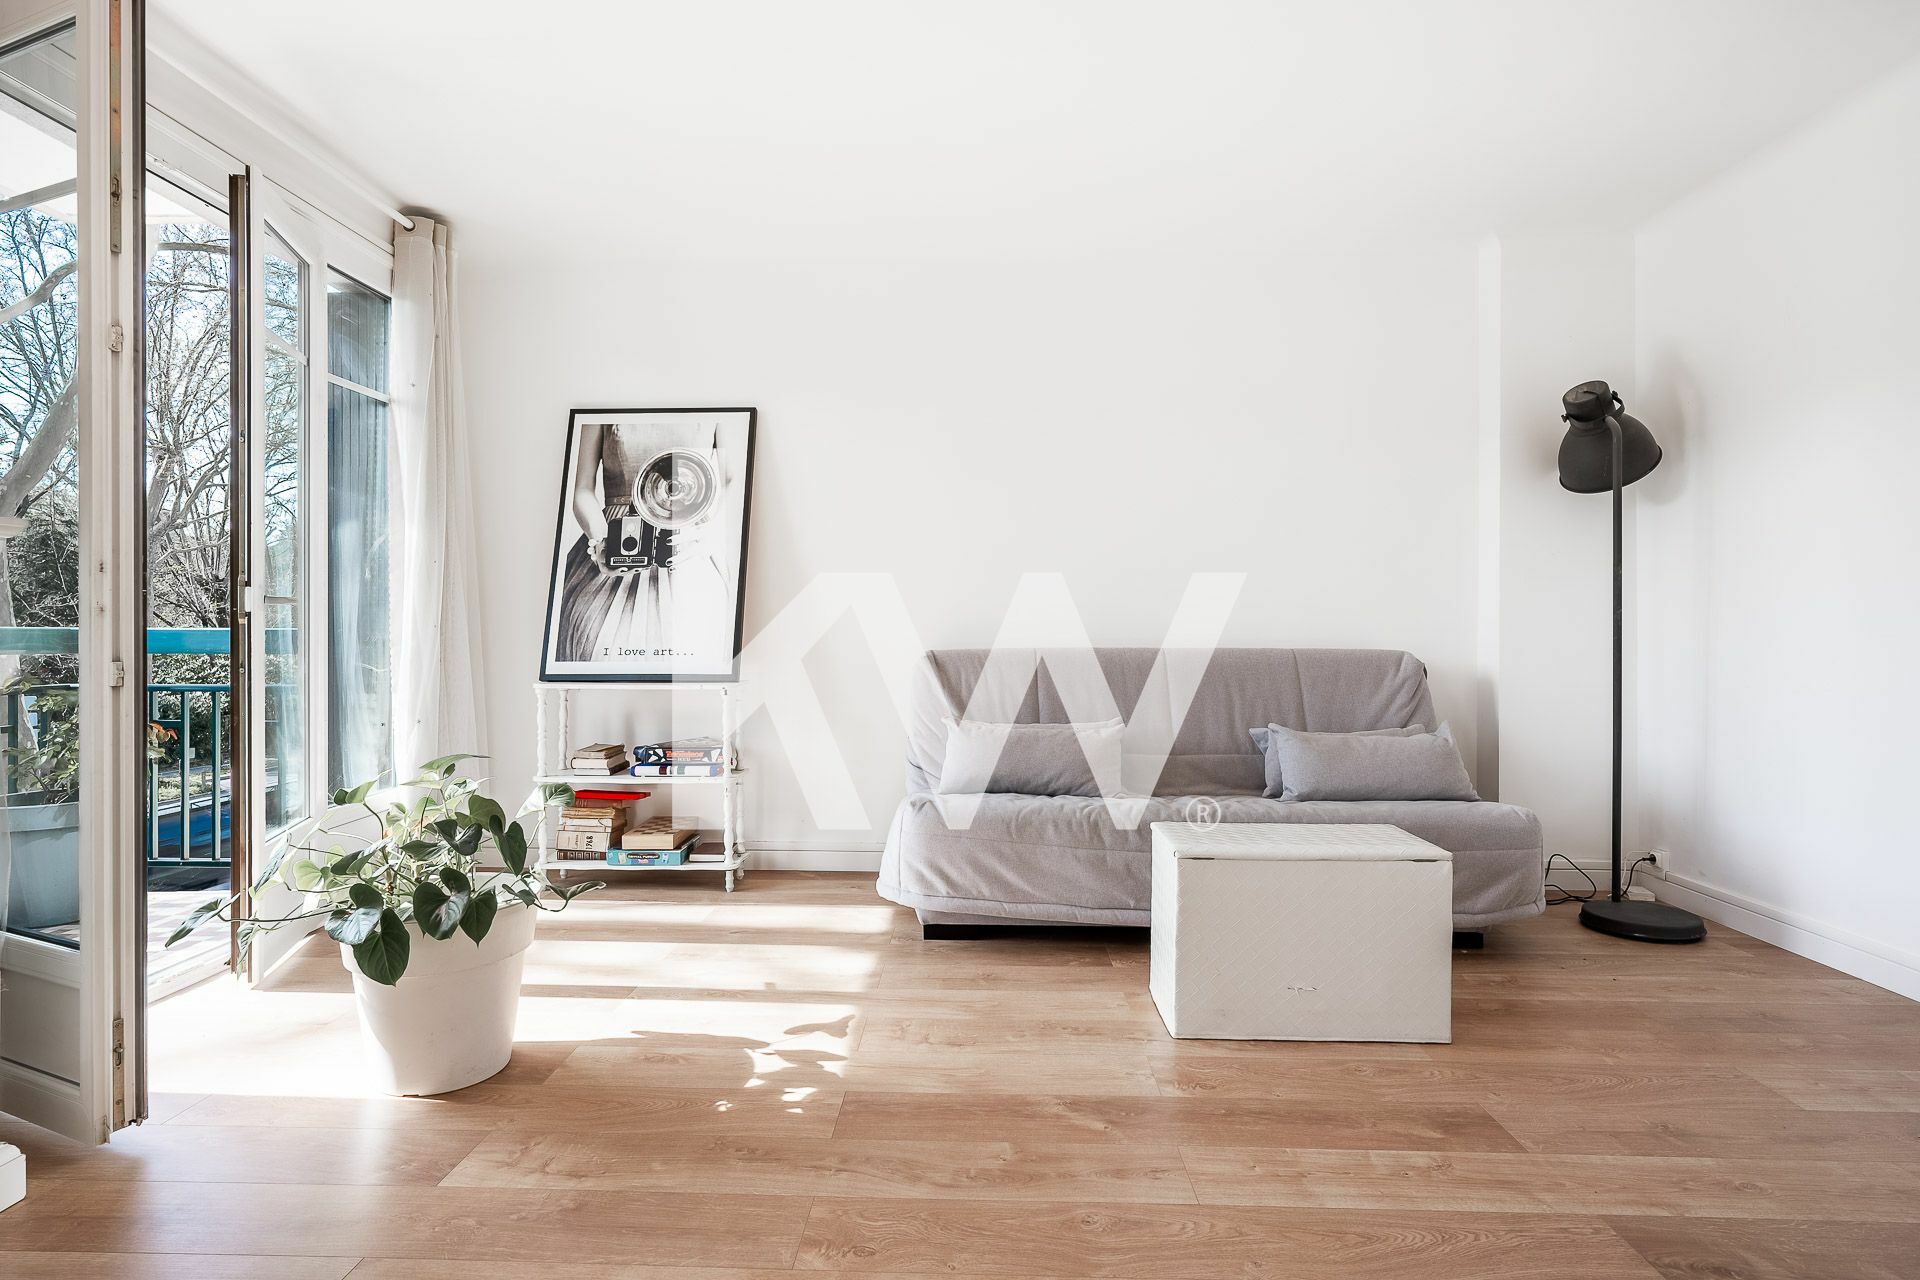 VENTE d'un appartement 3 pièces (68 m²) à RUEIL MALMAISON